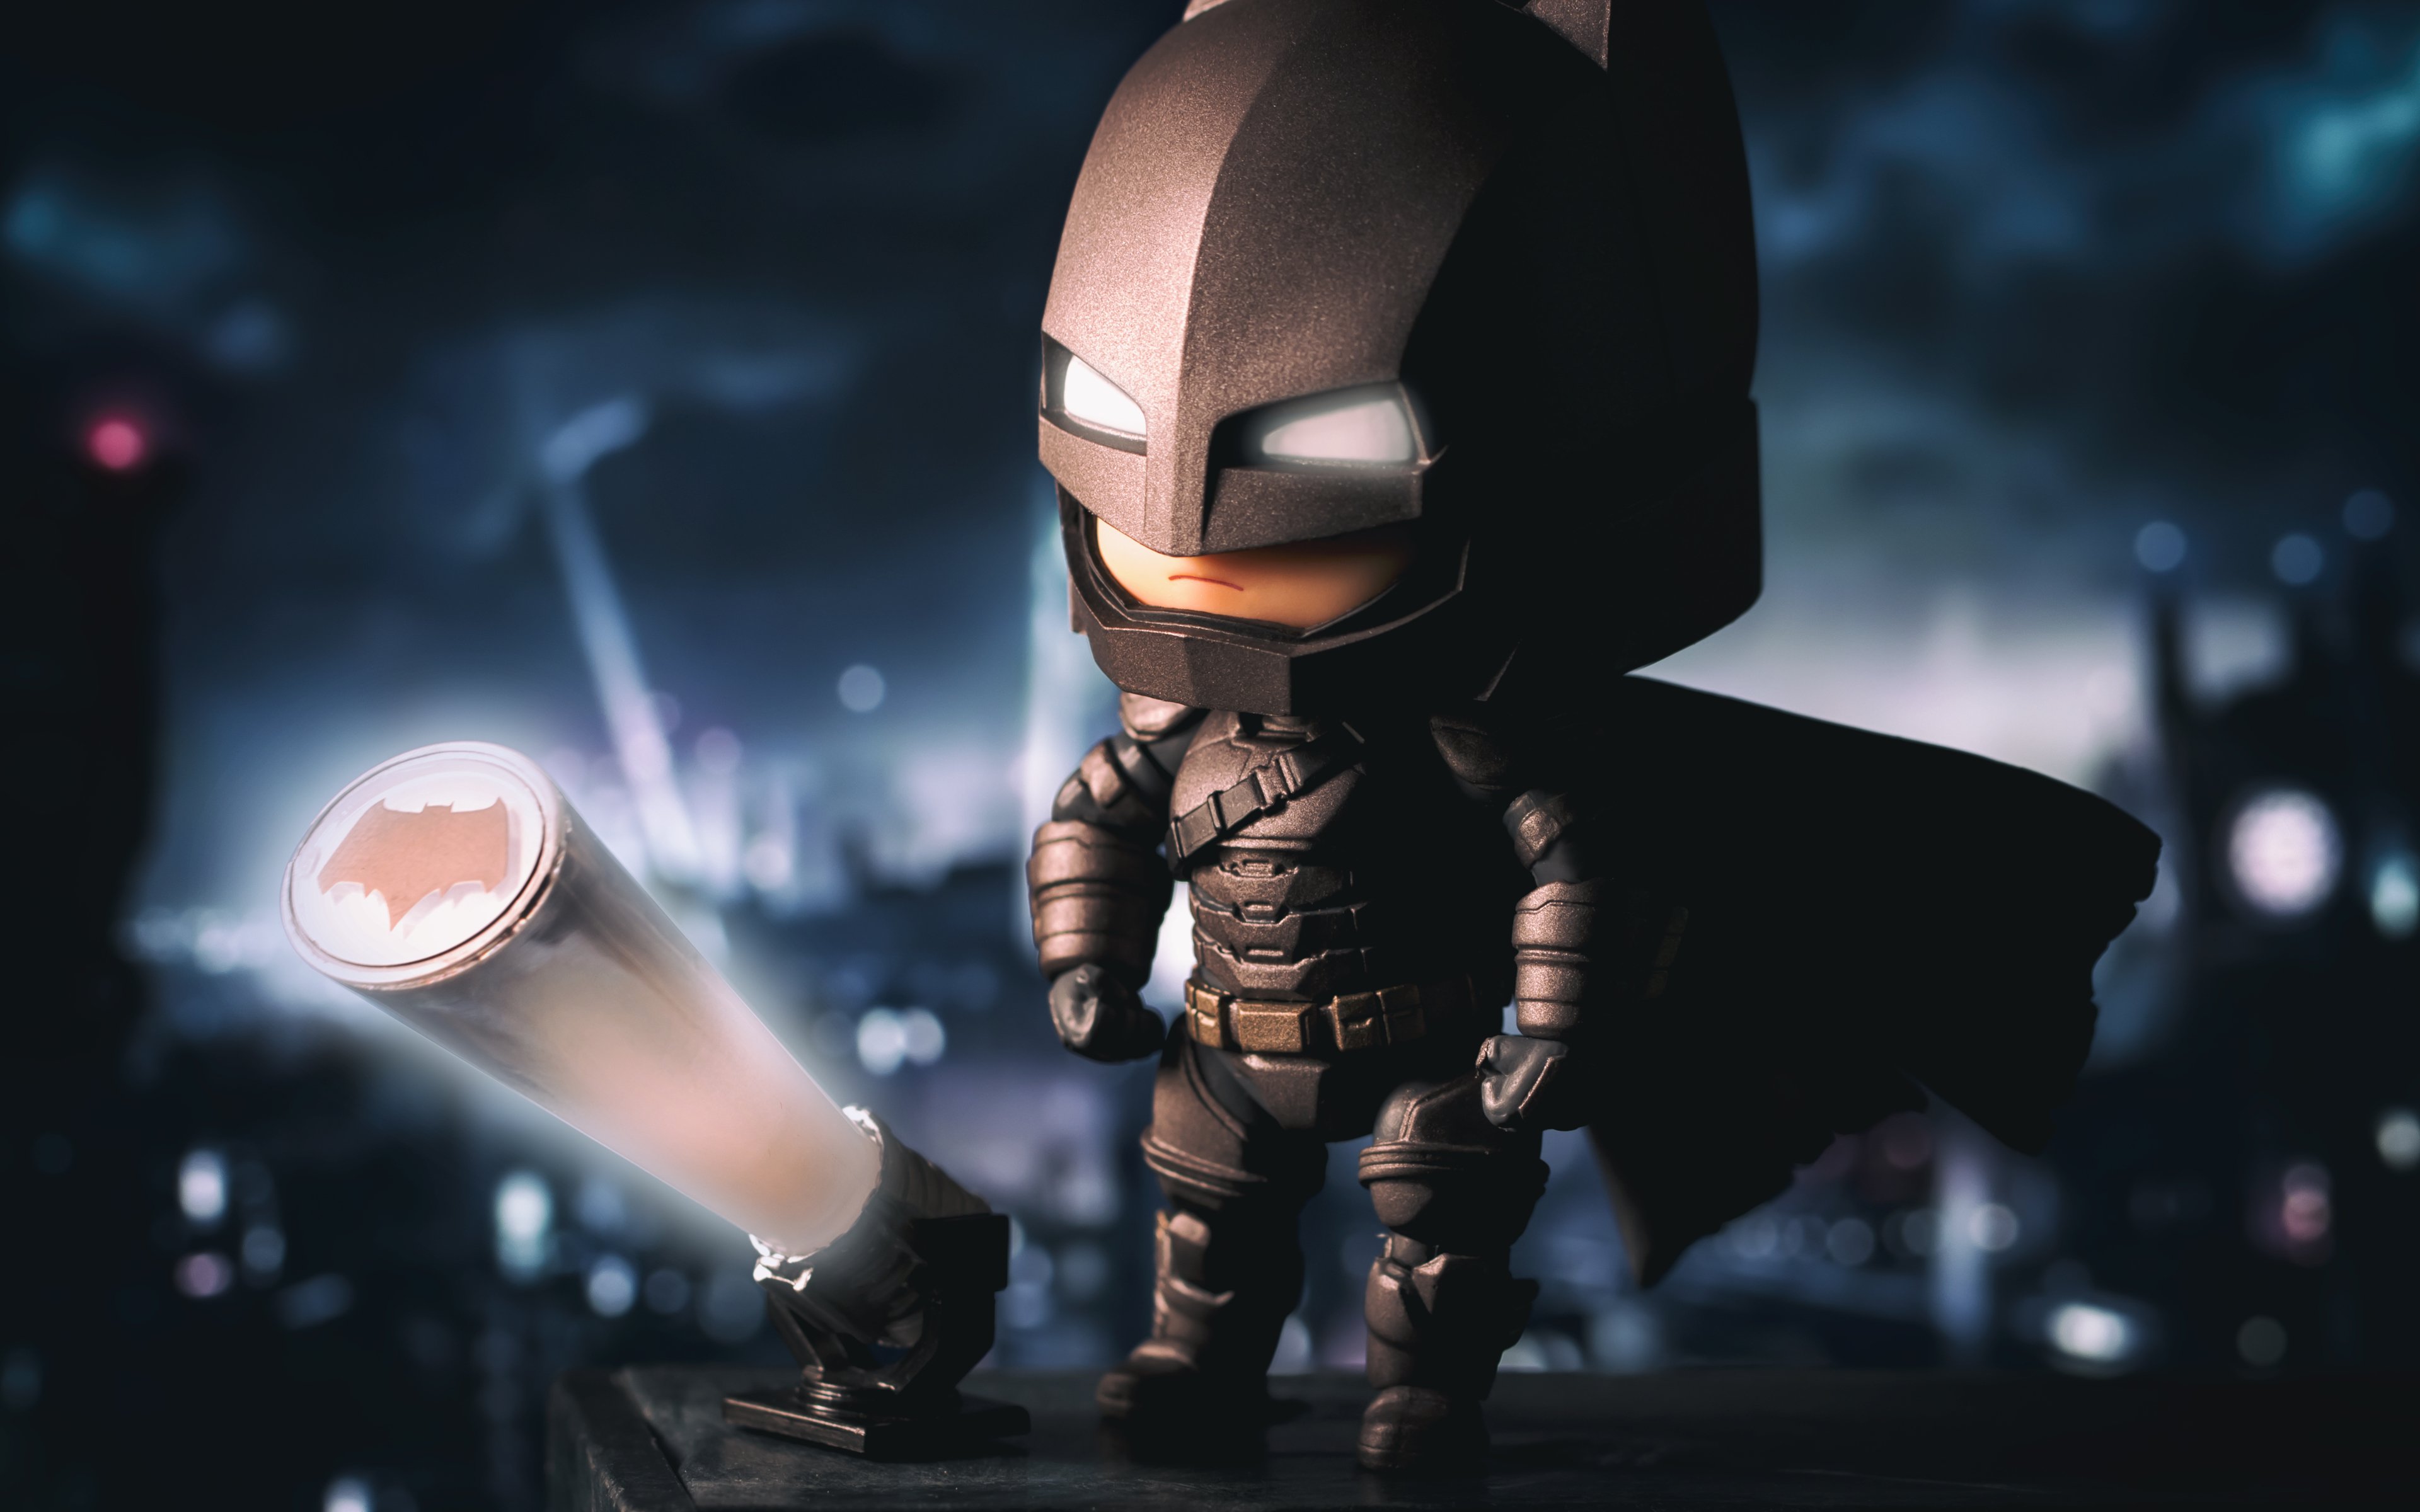 Batman 3D 4k - hình nền tuyệt đẹp dành cho những fan hâm mộ nhân vật huyền thoại này. Với công nghệ đỉnh cao, hình ảnh được tái hiện một cách chân thật và sống động hơn bao giờ hết, khám phá những bức ảnh độc đáo và lạ mắt liên quan đến Batman và tận hưởng khoảnh khắc phiêu lưu.